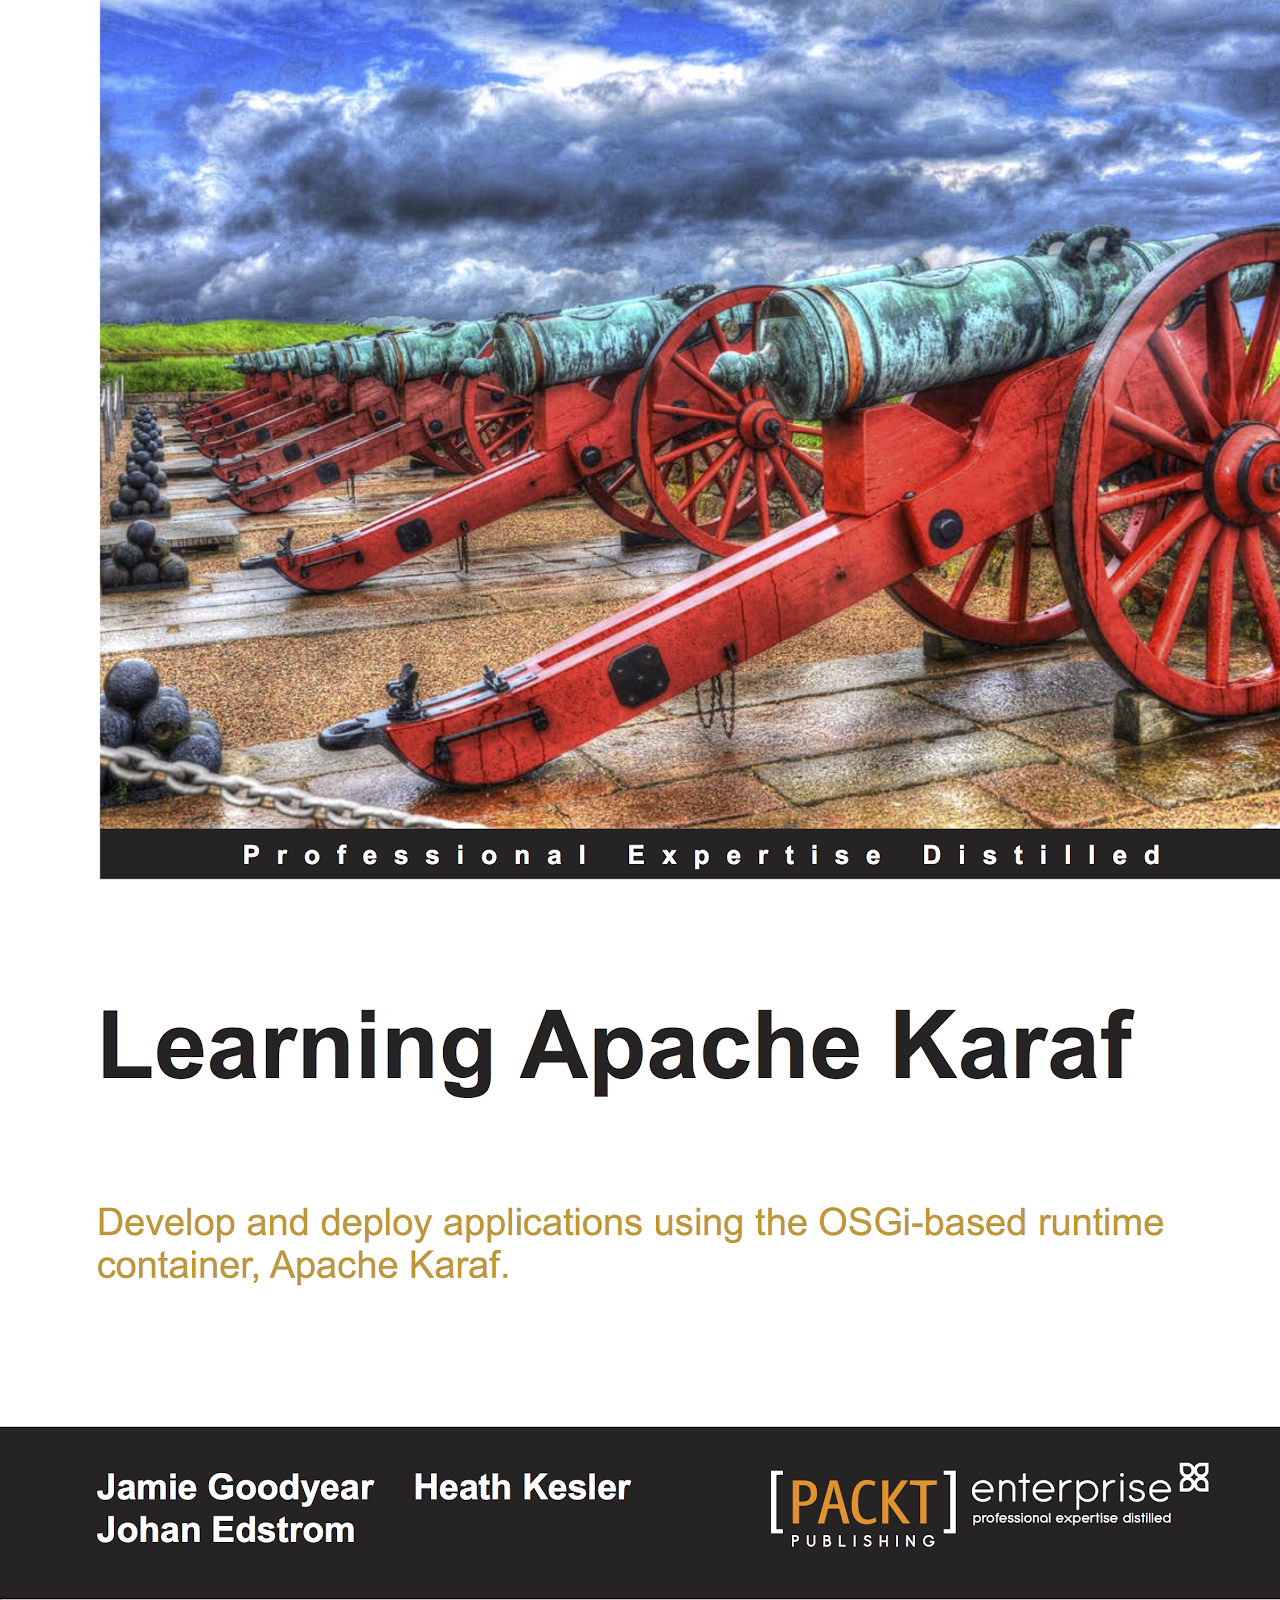 Learning Apache Karaf